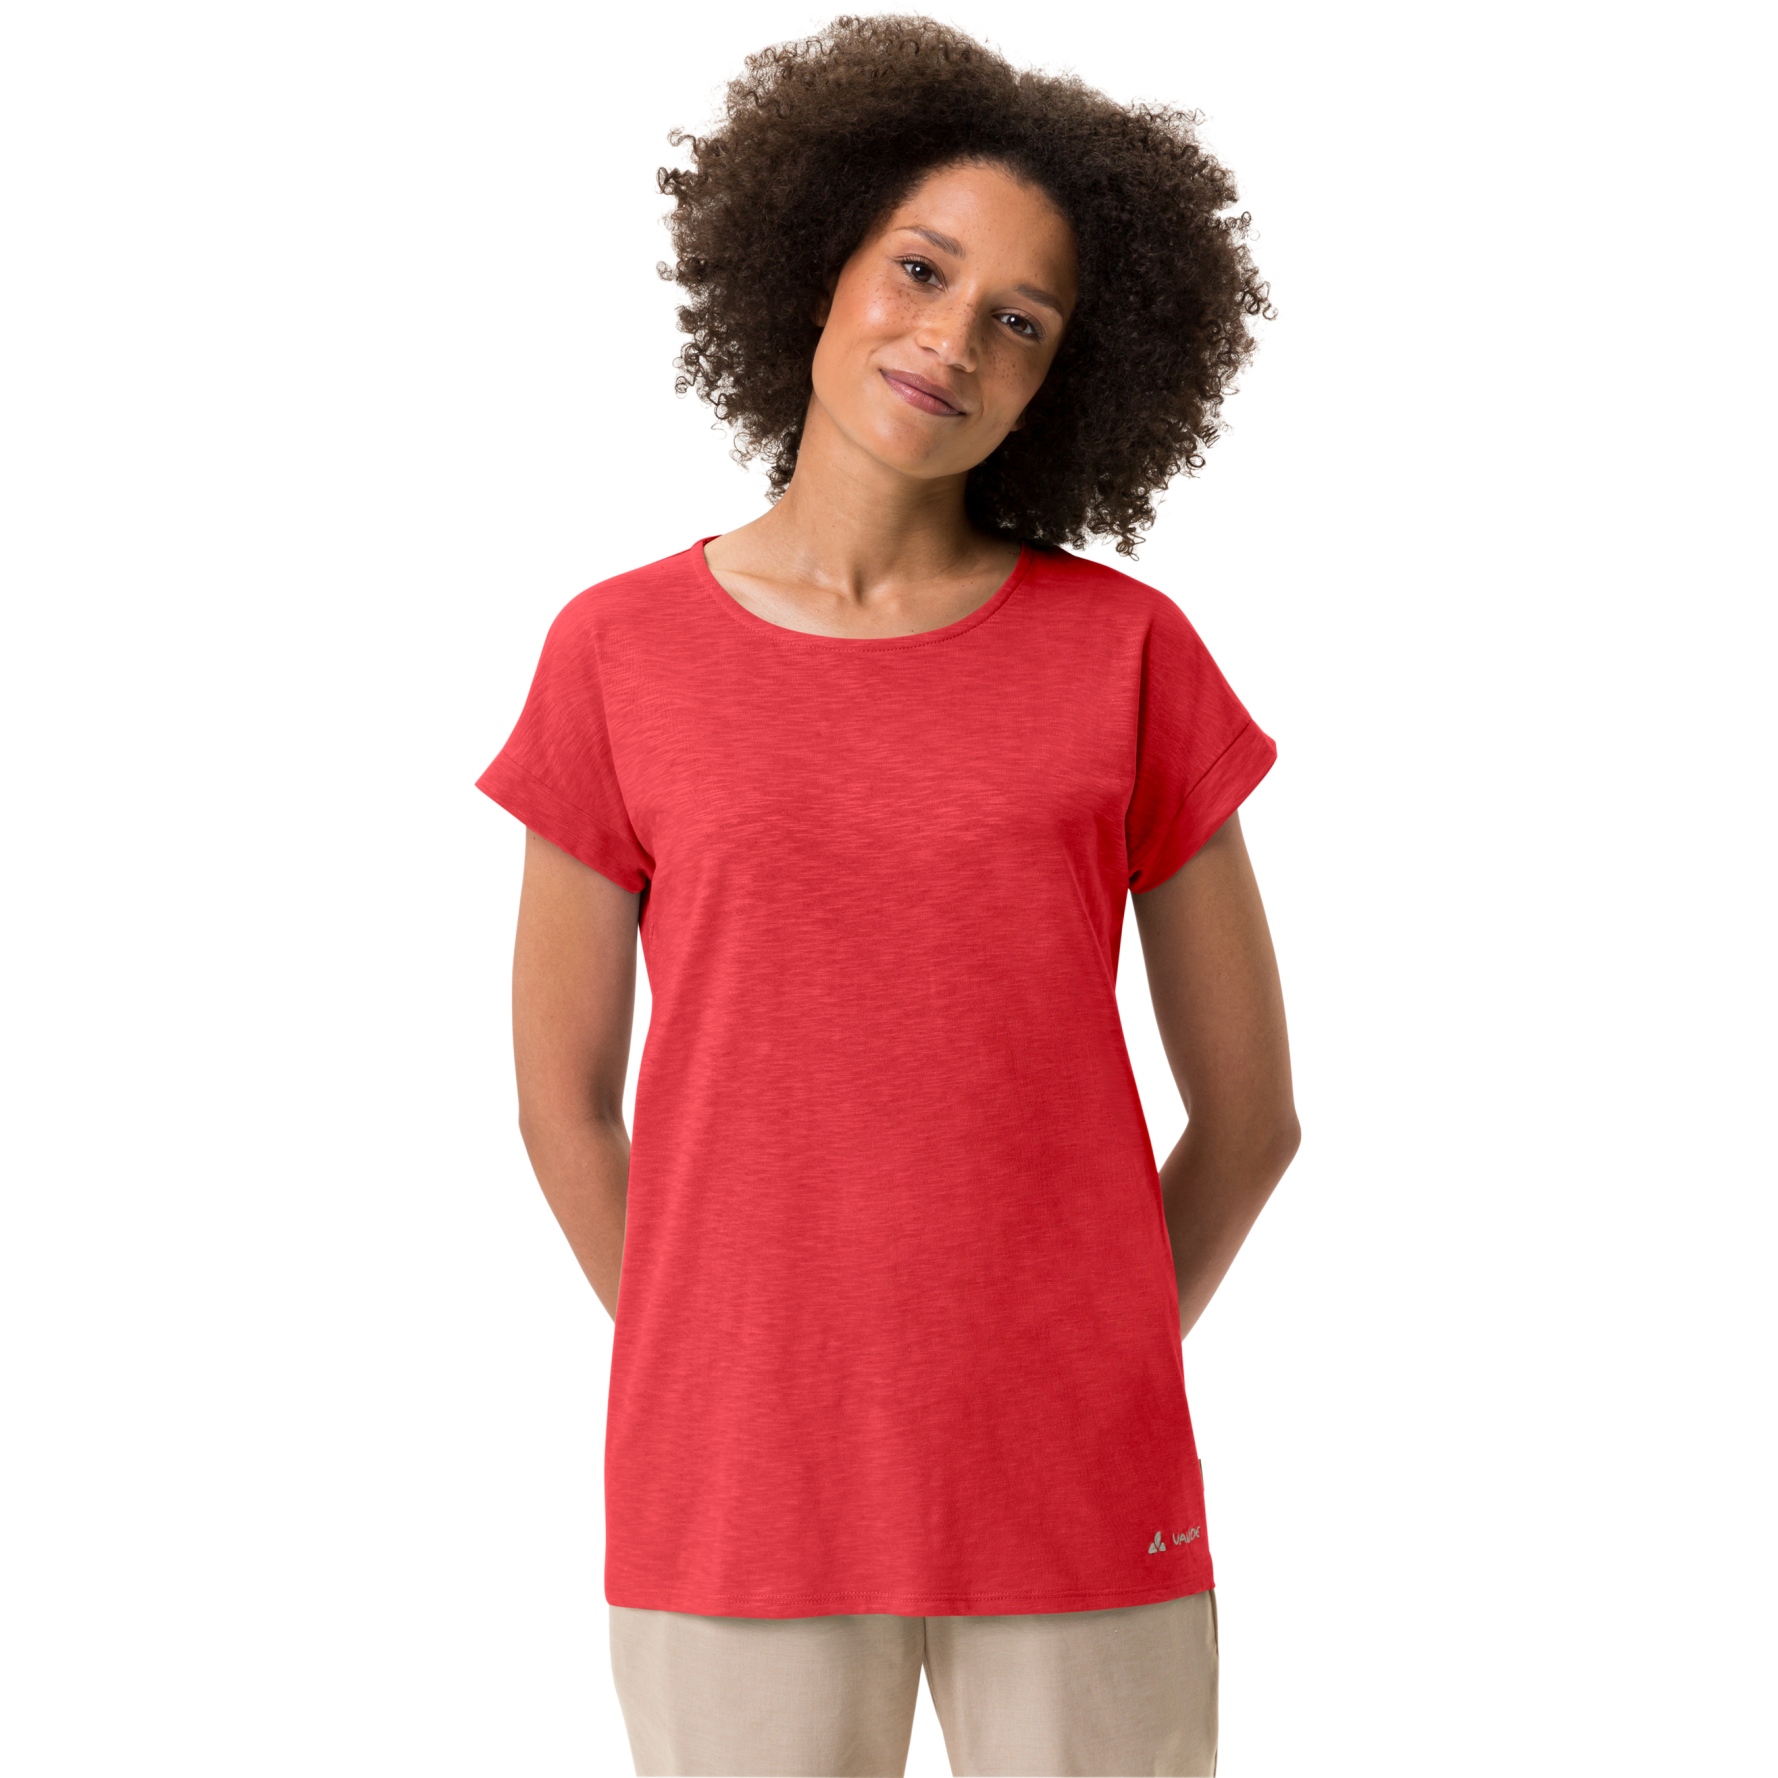 Produktbild von Vaude Moja IV T-Shirt Damen - flame